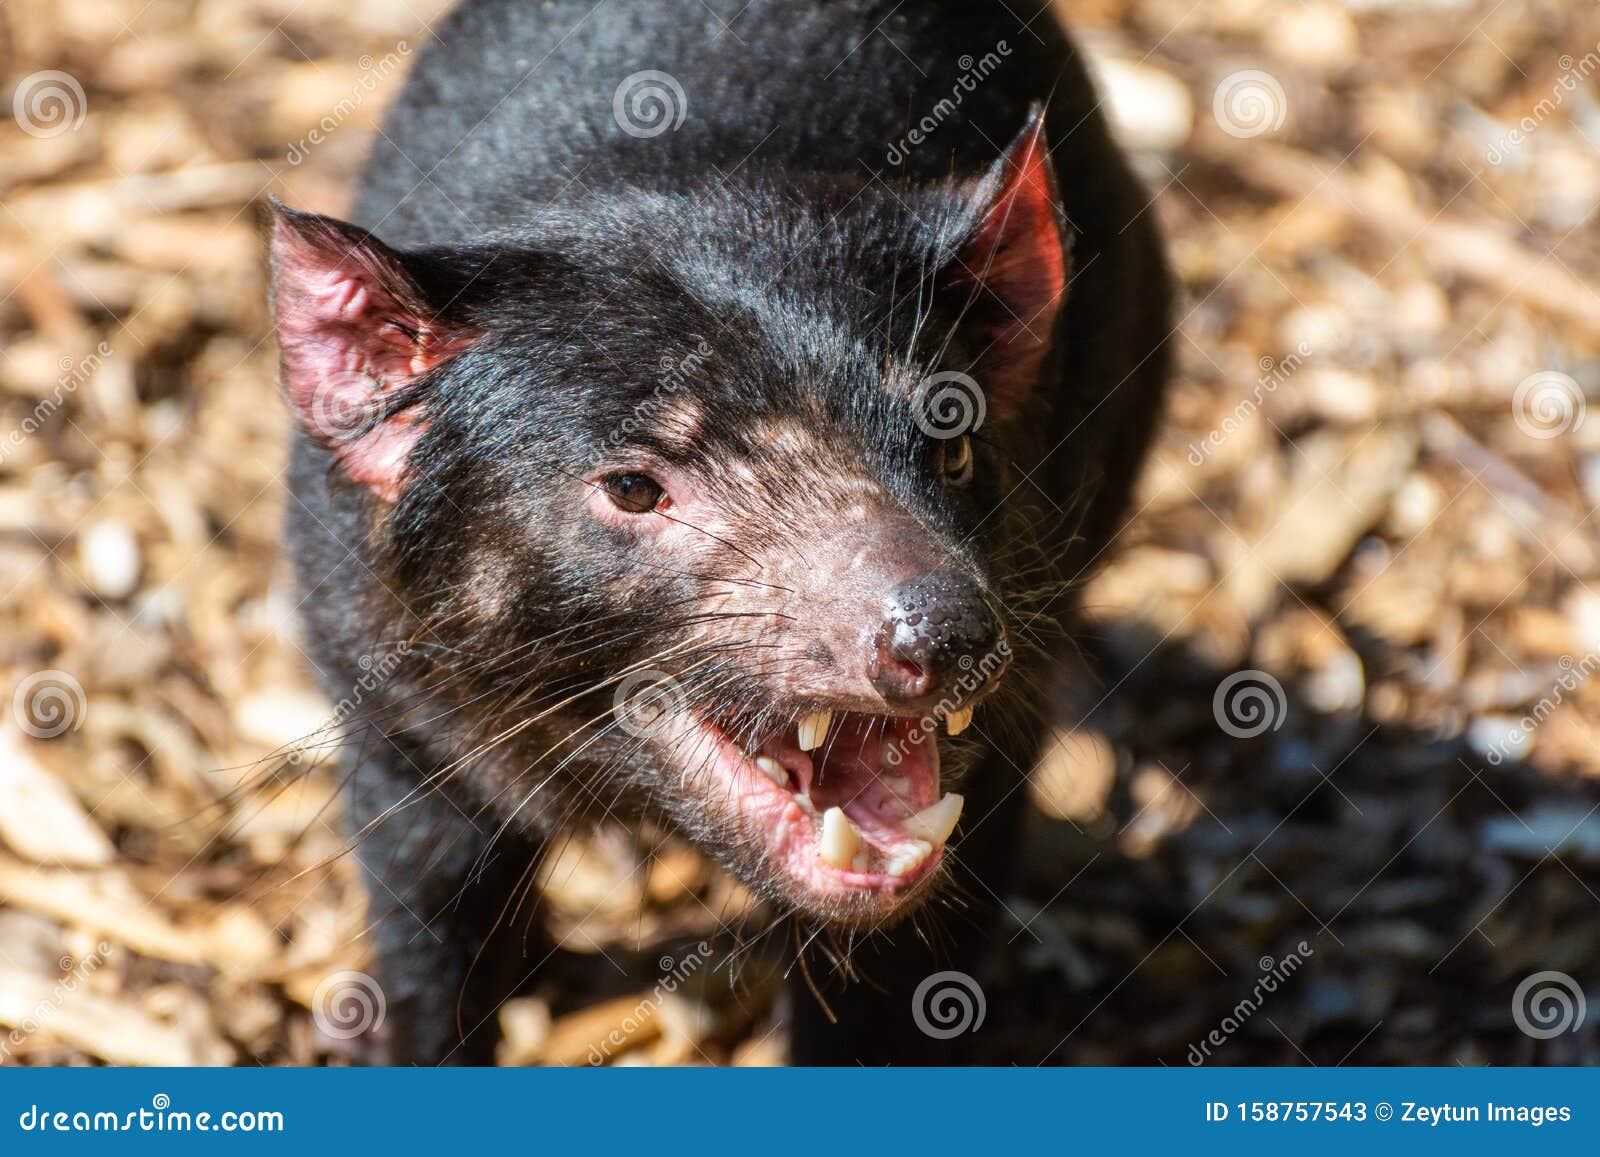 tasmanian devil sarcophilus harrisii